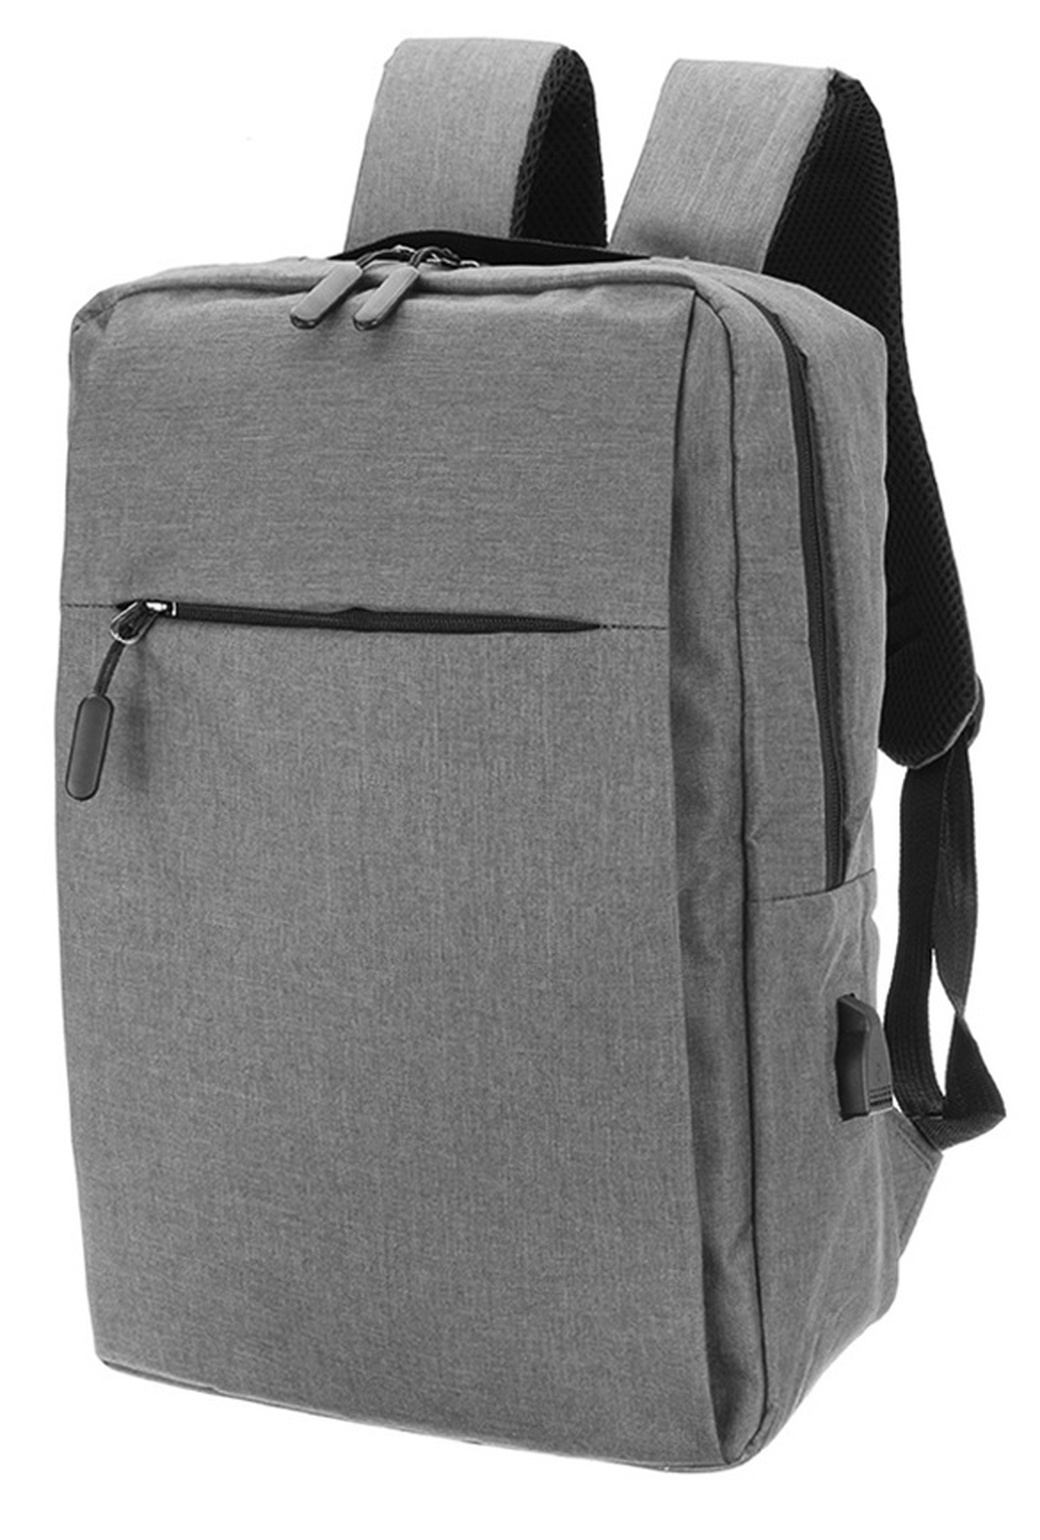 Рюкзак Xiaomi Mi Backpack Classic Business для ноутбука 15“, 17 л, серый фото